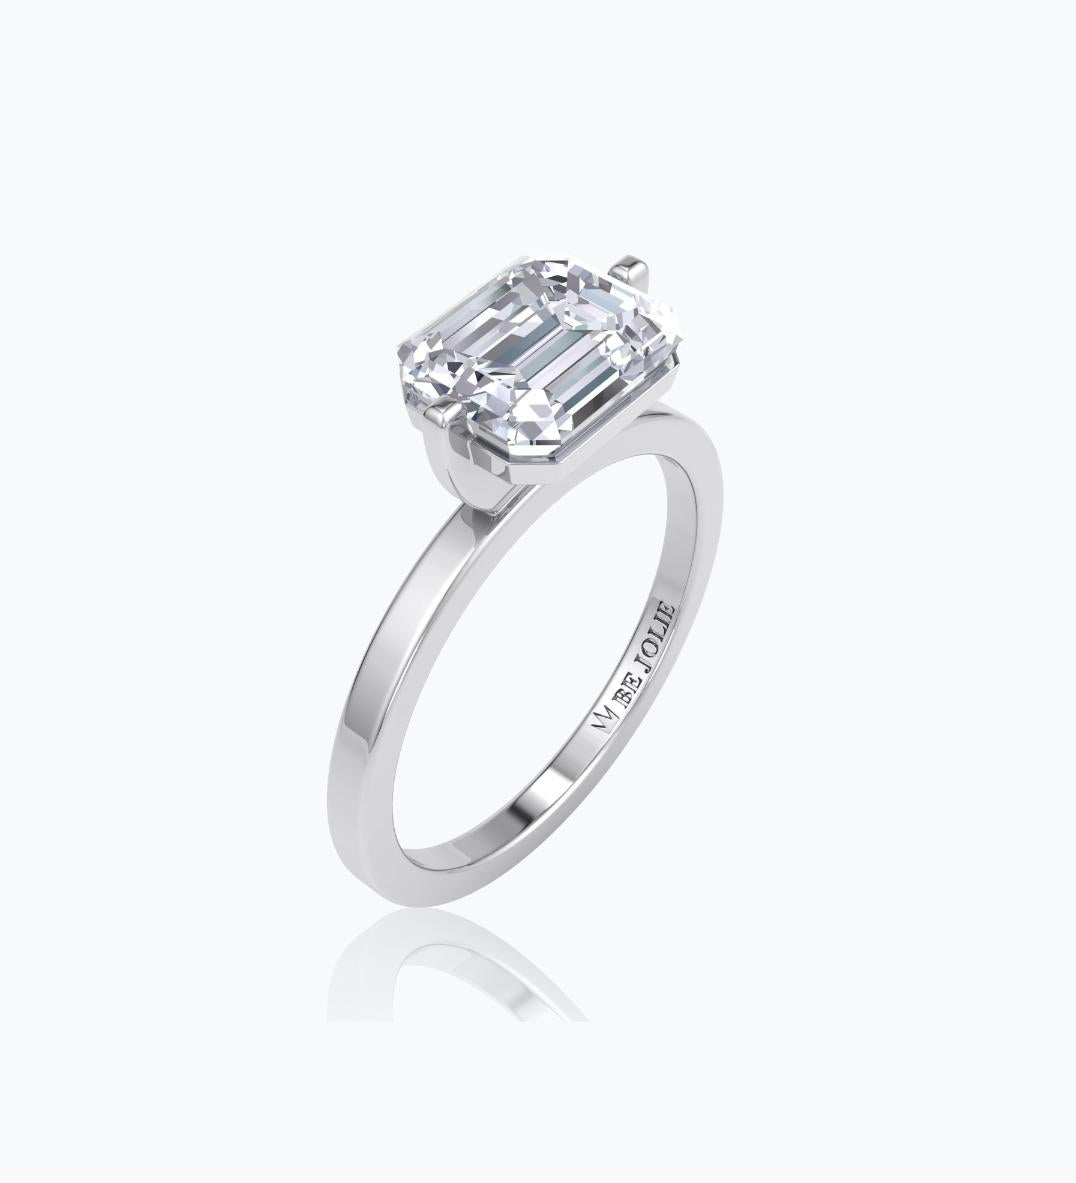 Handgefertigter Solitär-Verlobungsring mit einem 2,01-Karat-Diamanten im Smaragdschliff  G-H / VS22 und montiert auf 18K Weißgold. 
Ring Größe 6,5 und kann in der Größe geändert werden. 
Unser Ring ist eine Sonderanfertigung. Da die Herstellung